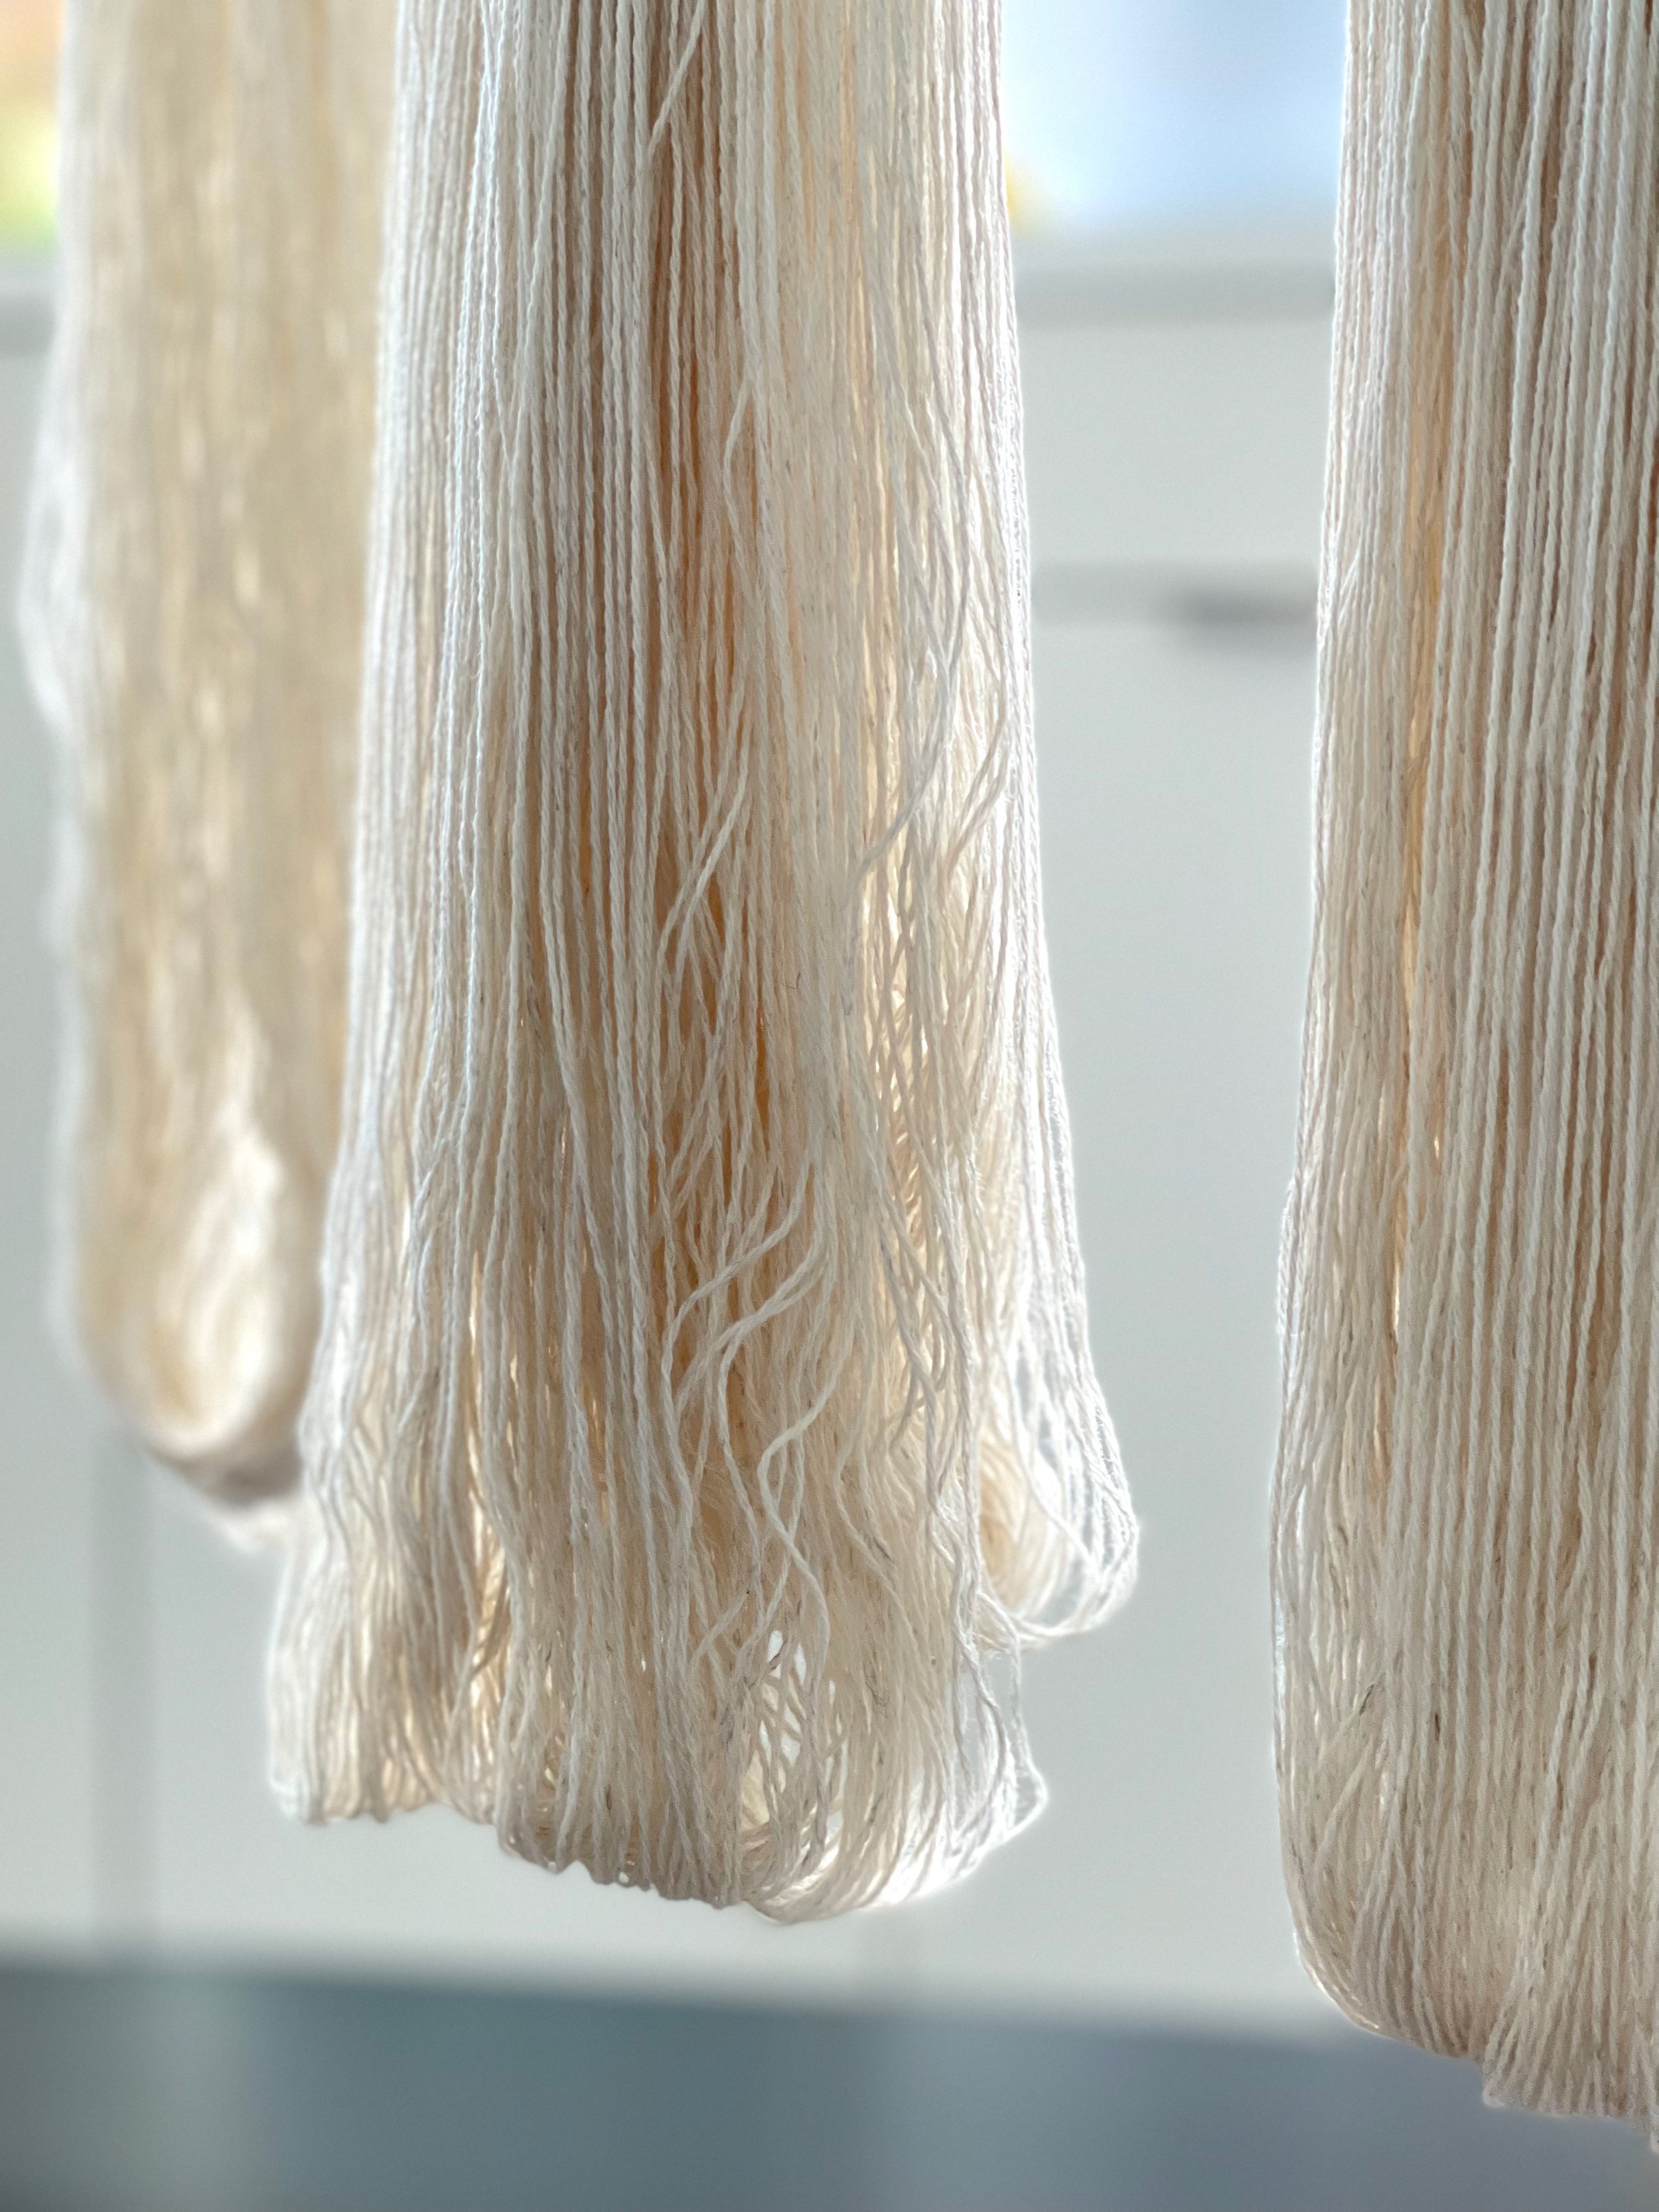 Julie Hoover Studio Blend No. 2 yarn being dried